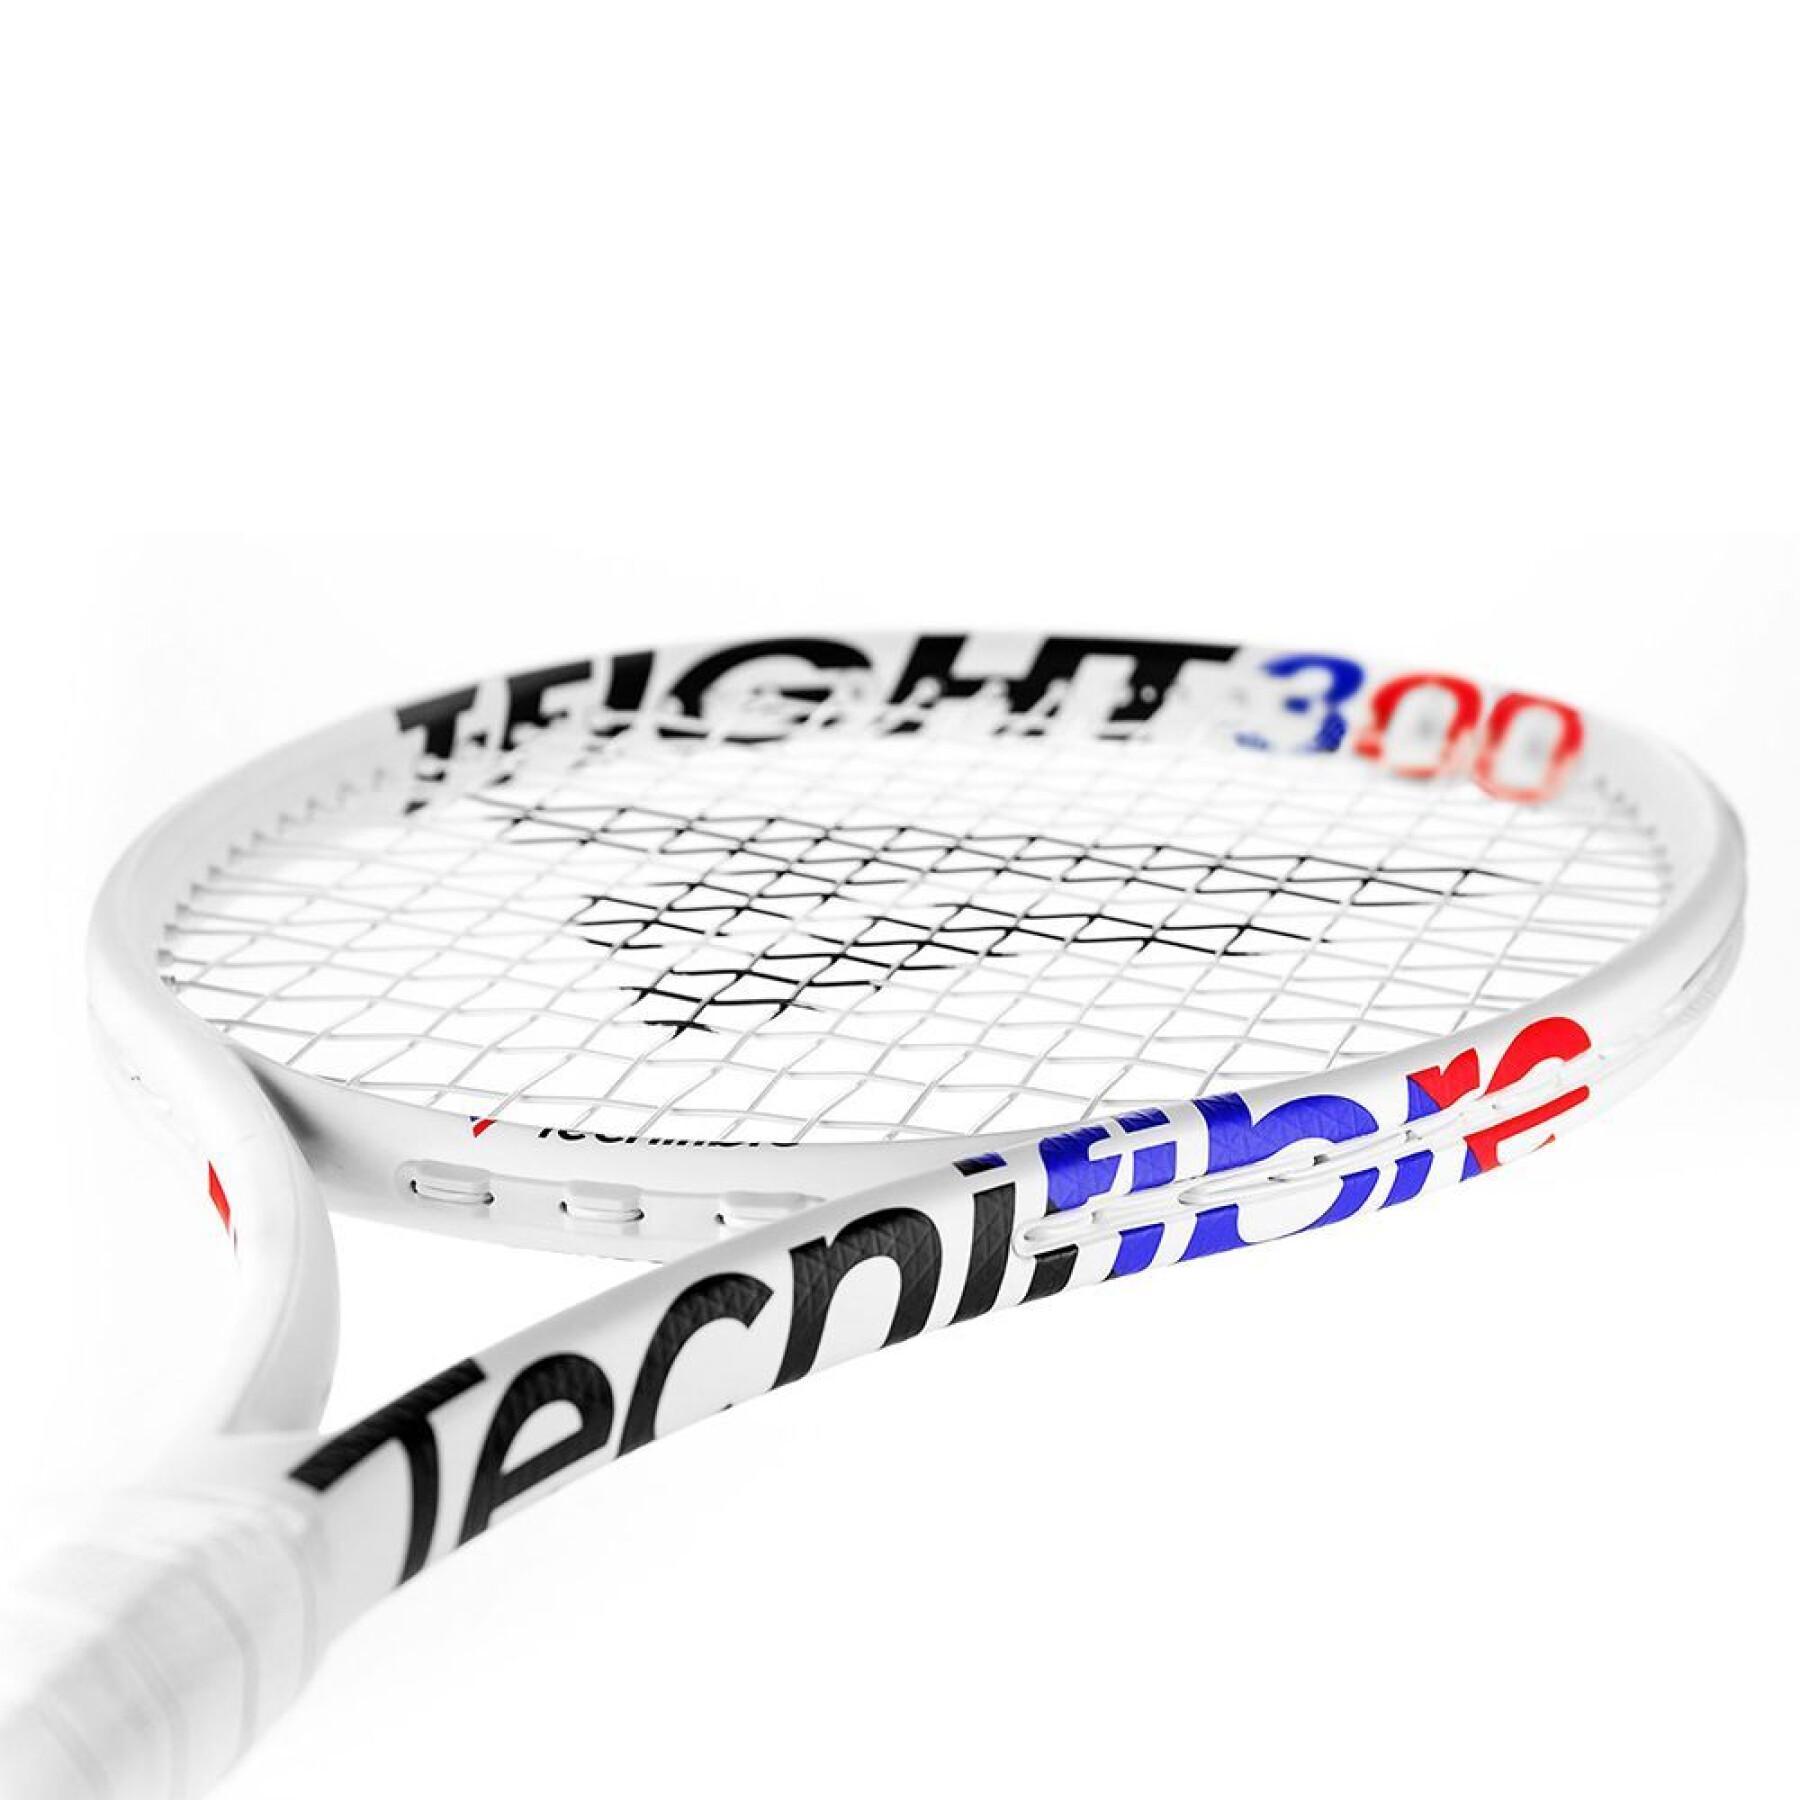 Racchetta da tennis Tecnifibre T-fight 300 Isoflex